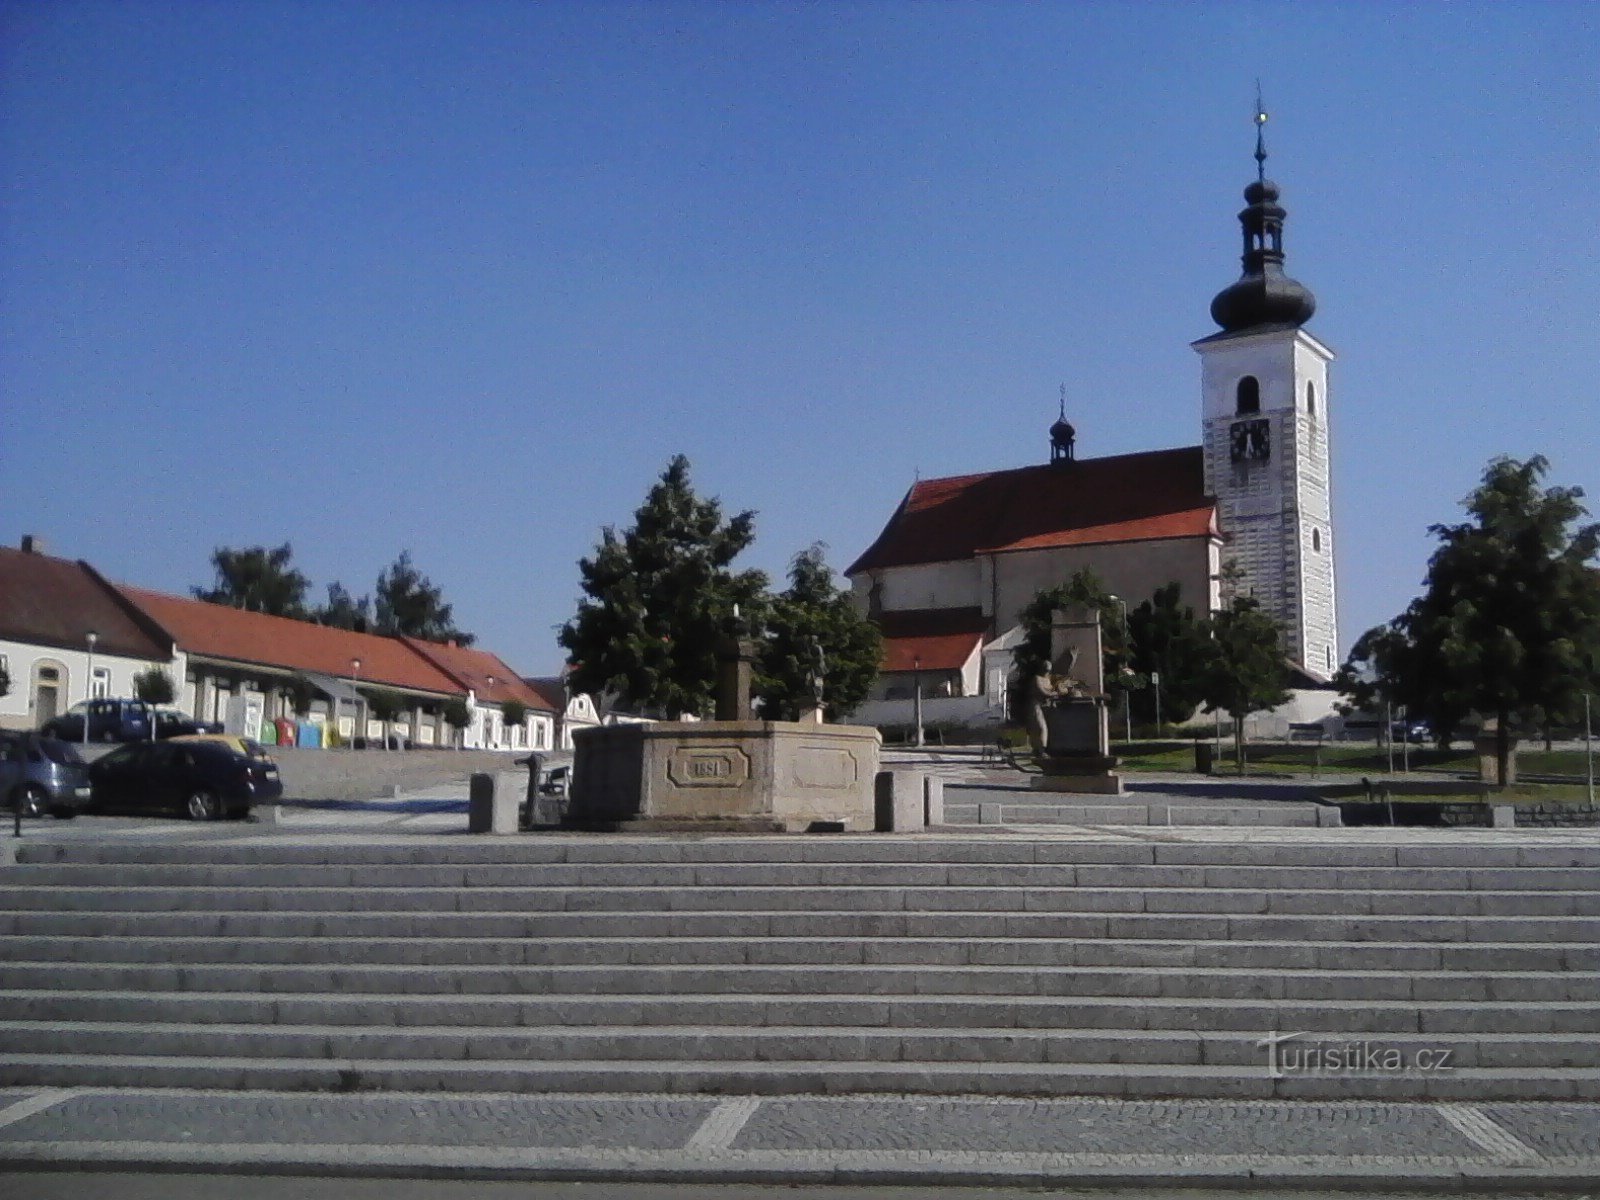 2. Kościół św. Vavřinec w Prčicy jest pierwotnie romański, został założony w XII wieku, być może w in